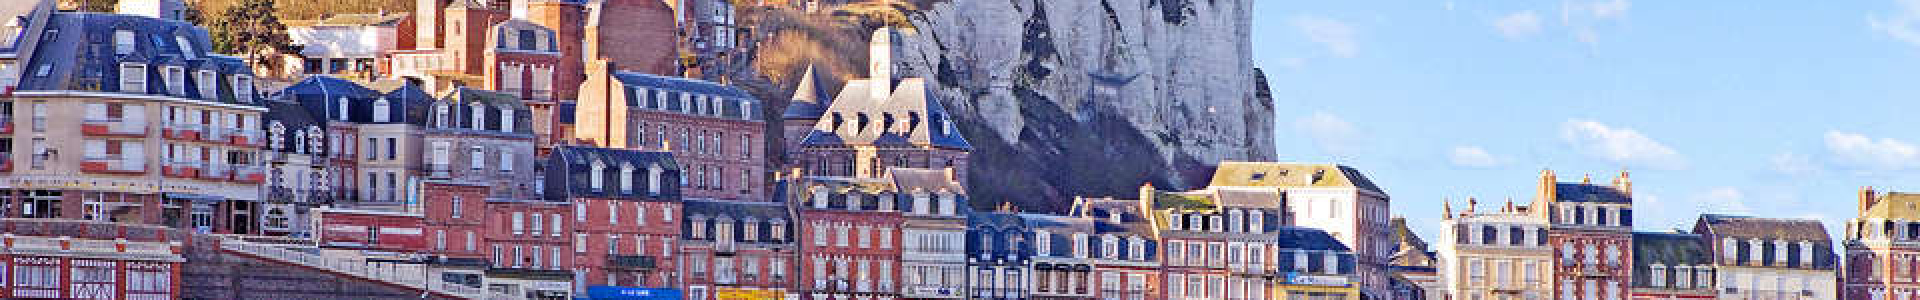 Wonderweekend : Bretagne, Normandie, Val de Loire : 2j/1n hôtel + dîner